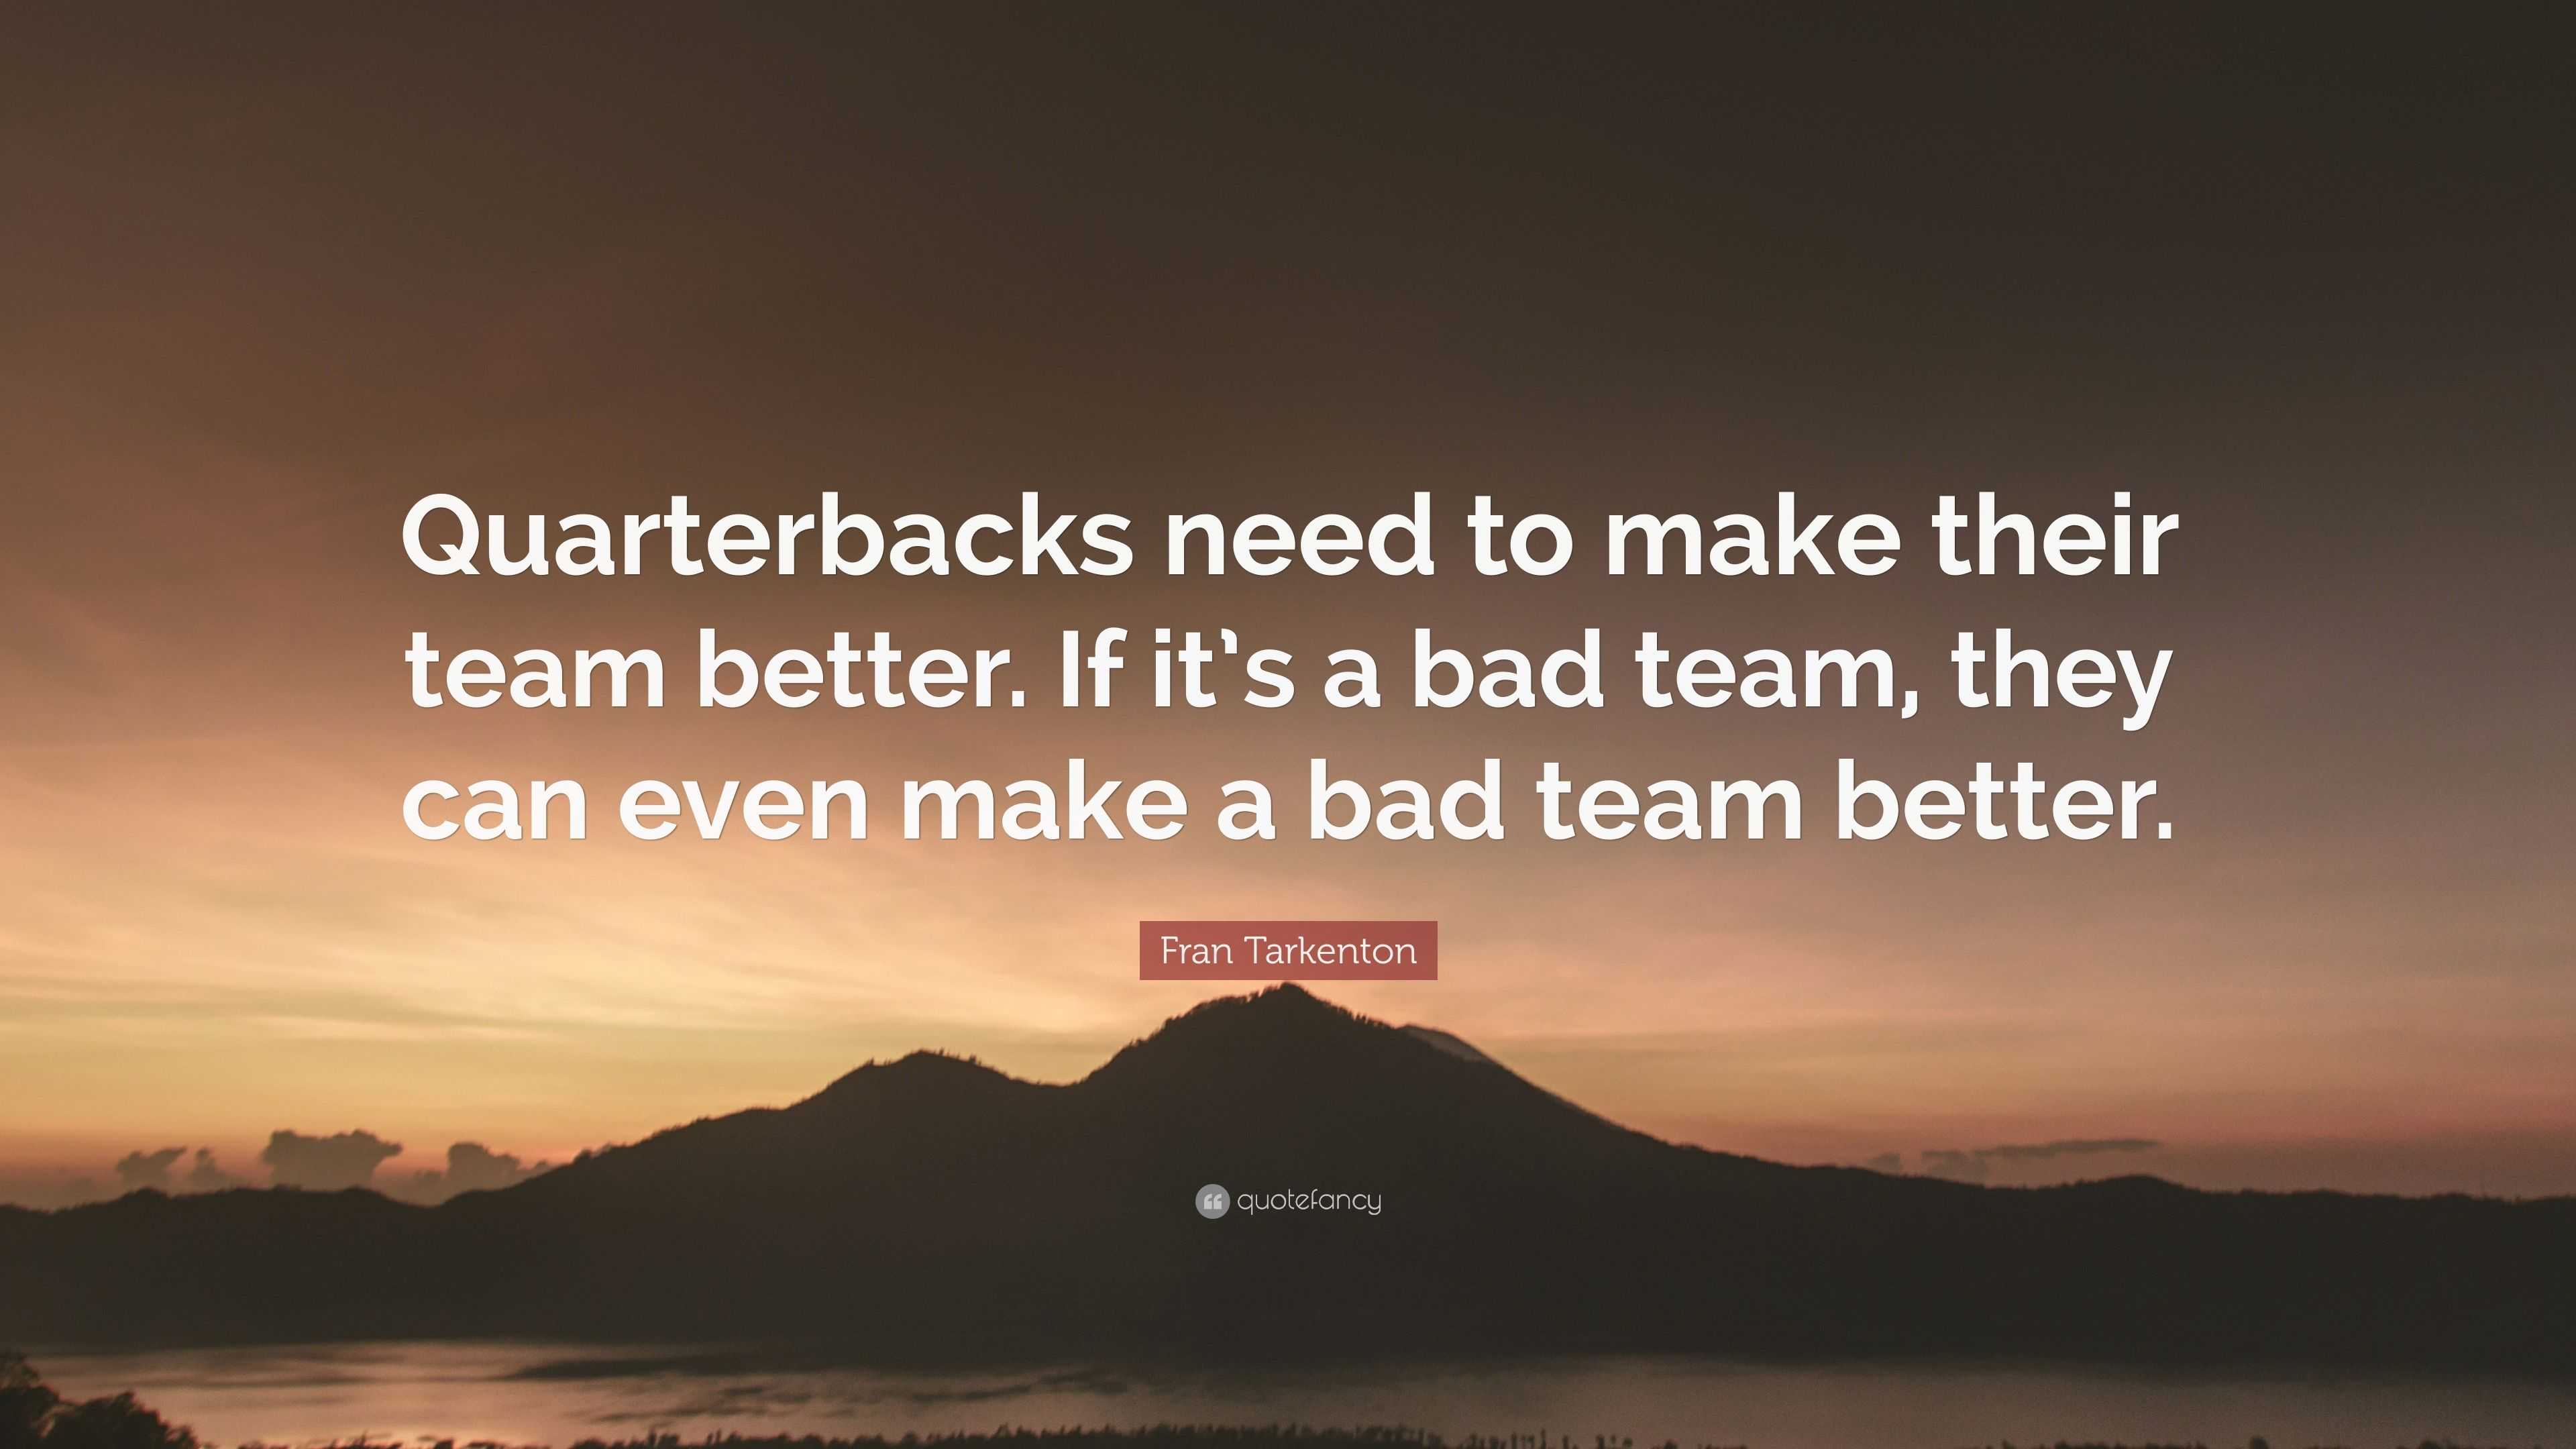 Fran Tarkenton Quote: “Quarterbacks need to make their team better. If ...